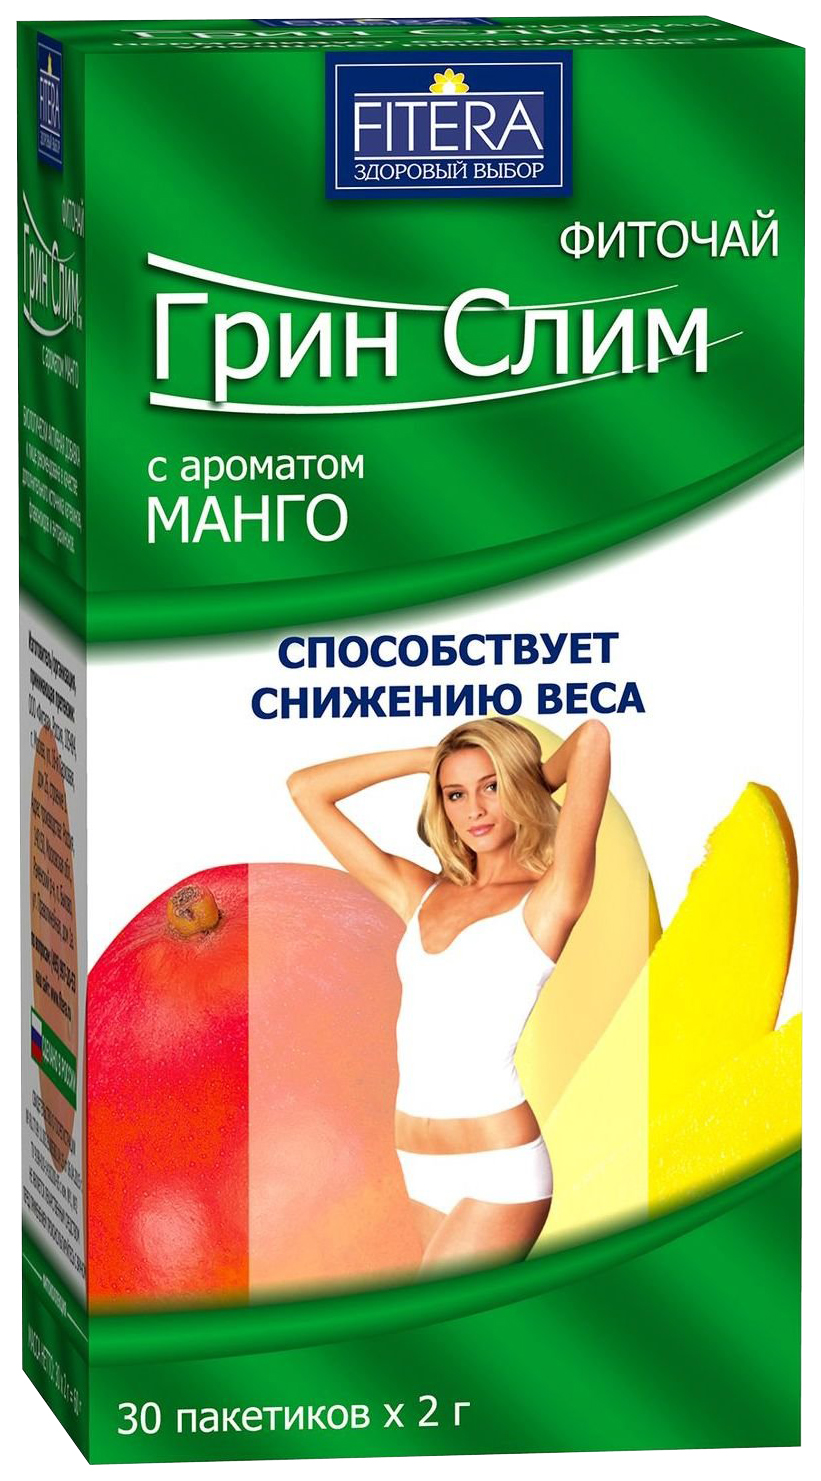 Купить Фиточай Fitera Грин Слим манго фильтр-пакеты 30 шт.